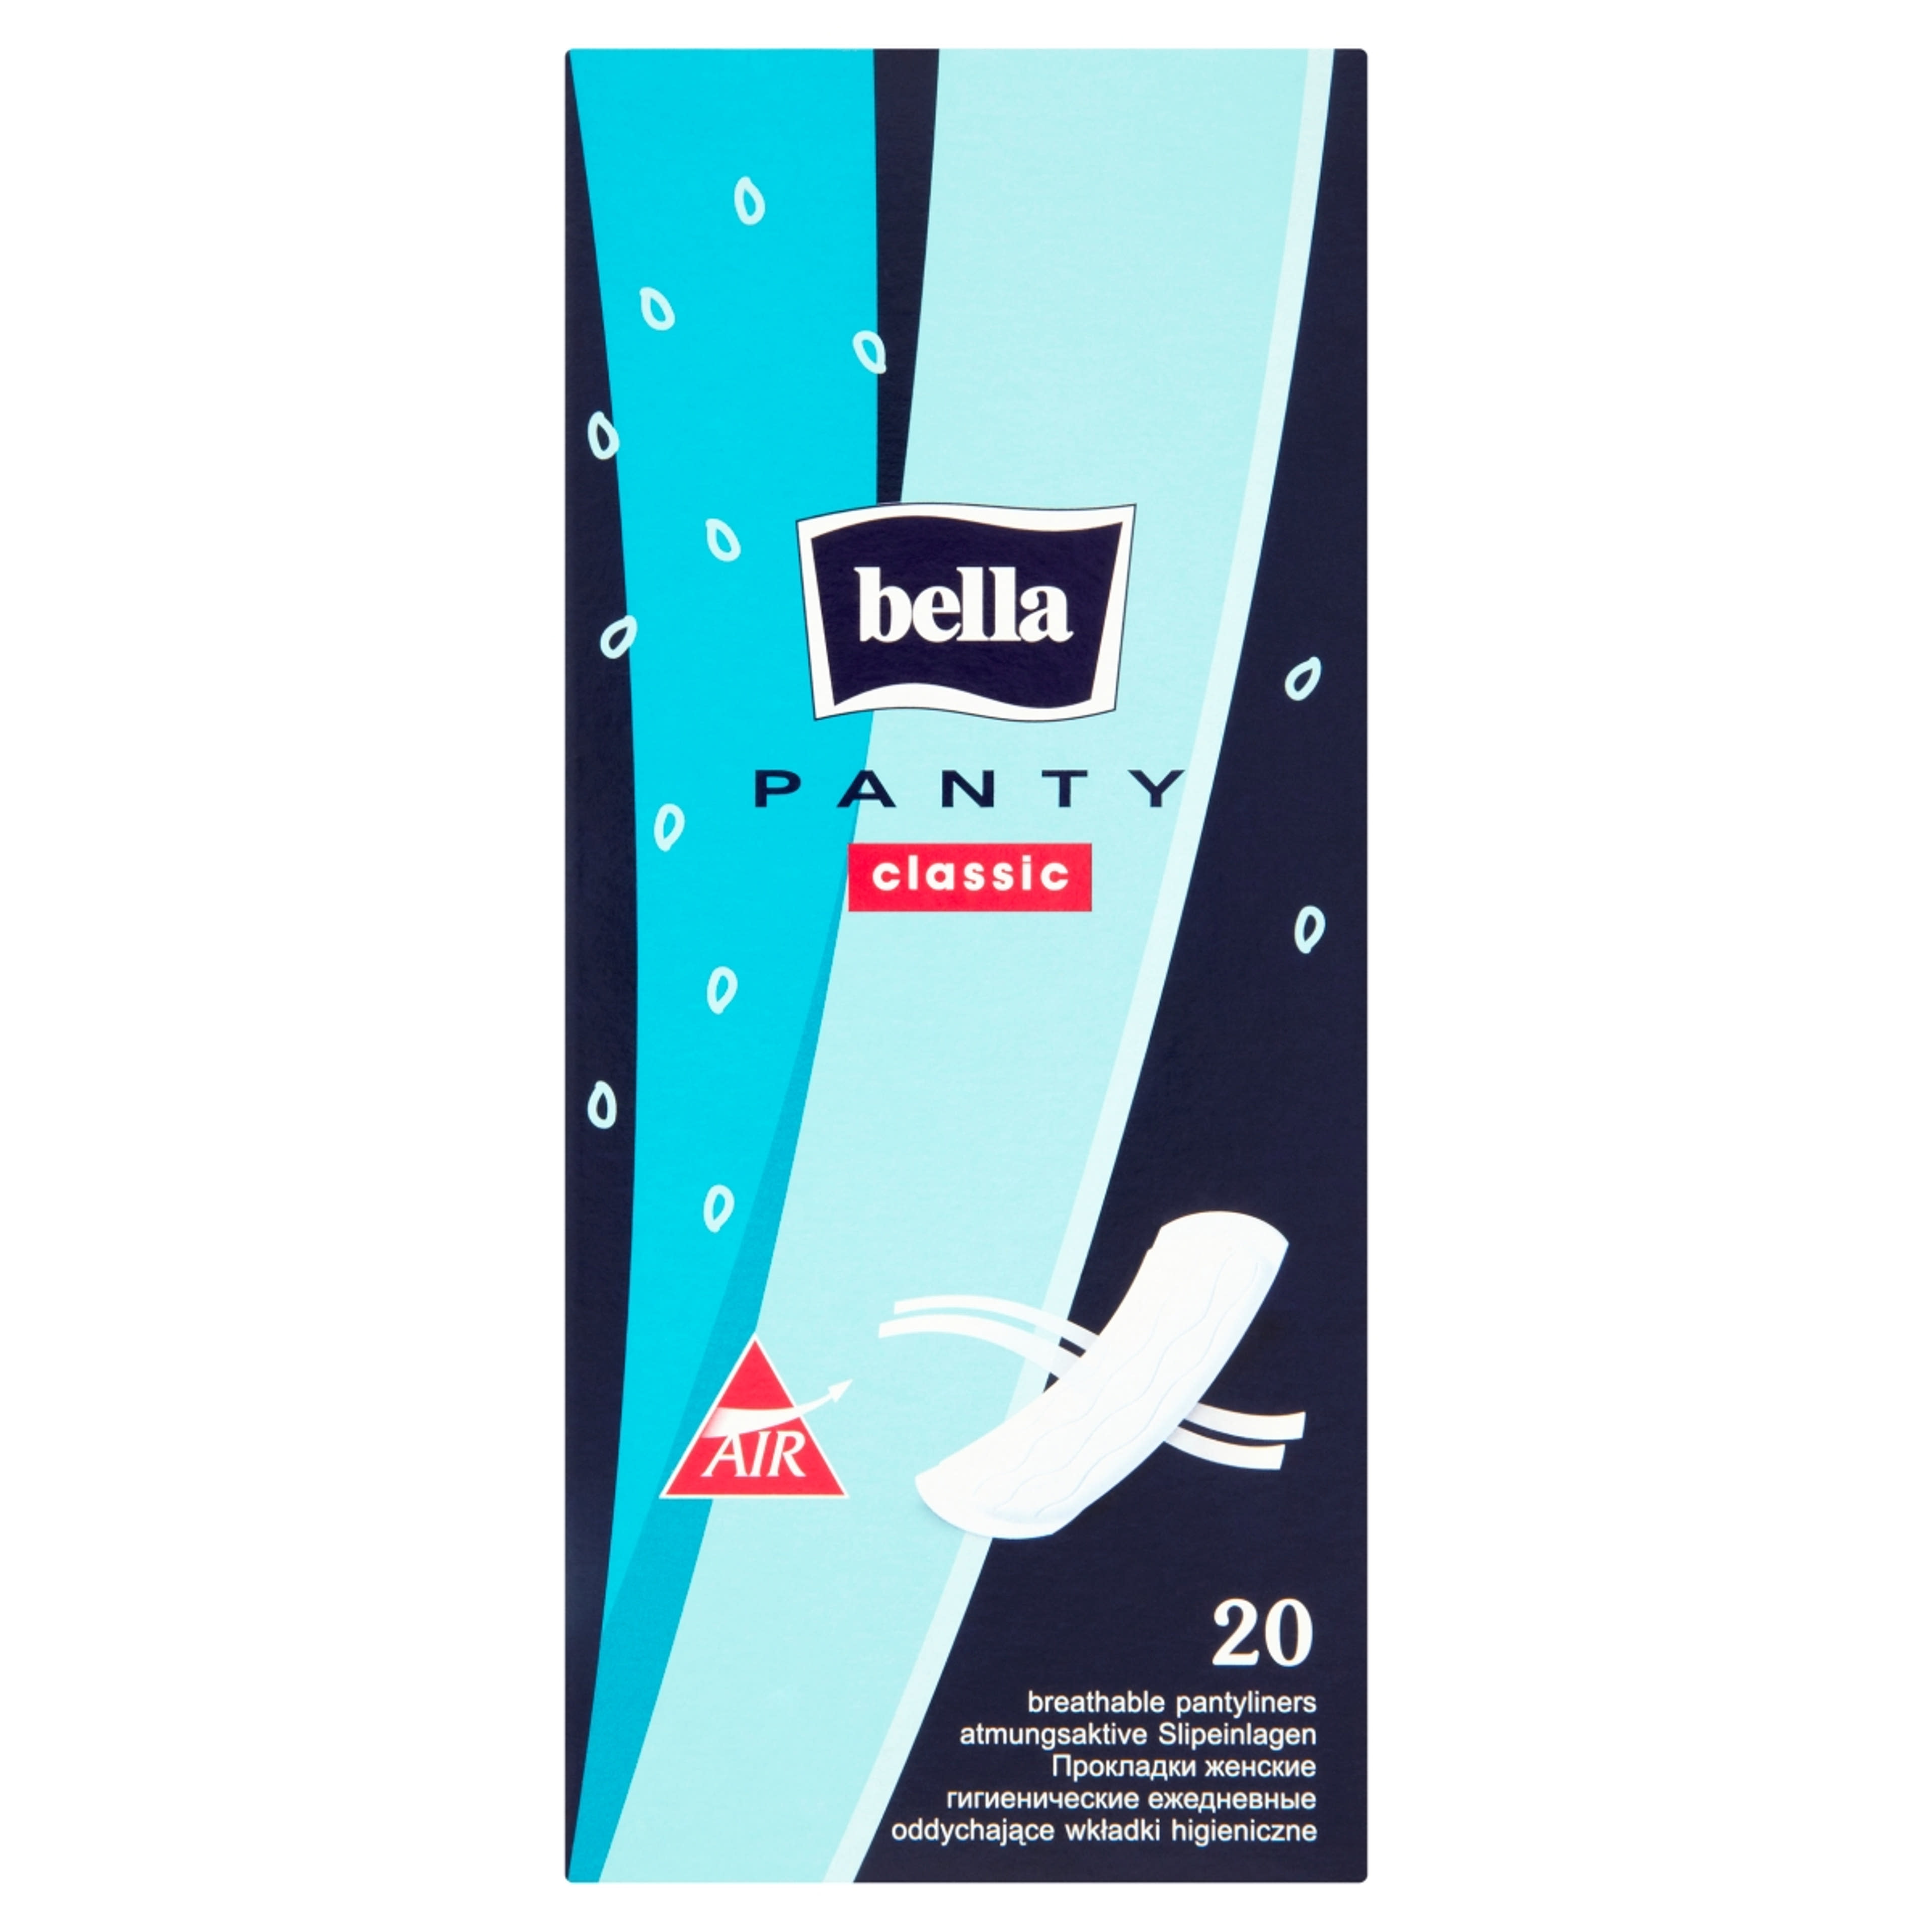 Bella Panty Classic tisztasági betét - 20 db-2